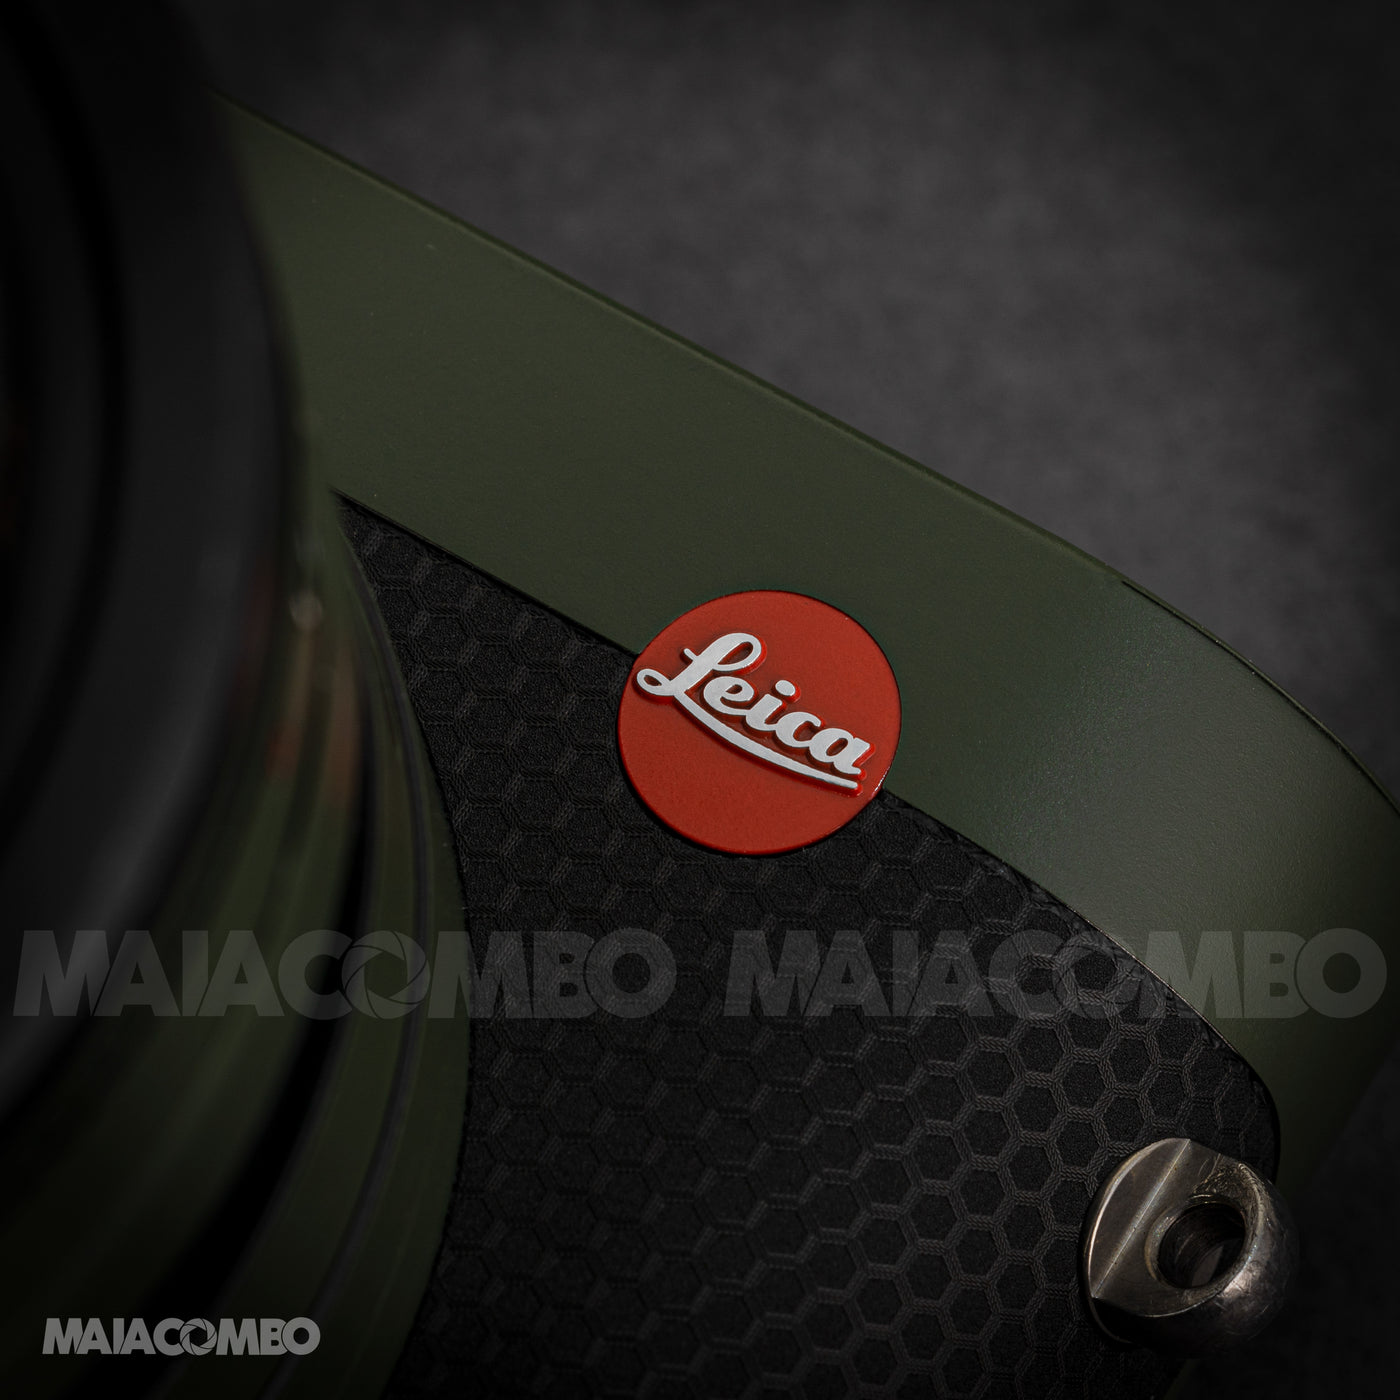 Leica Q Camera and Lens Skin